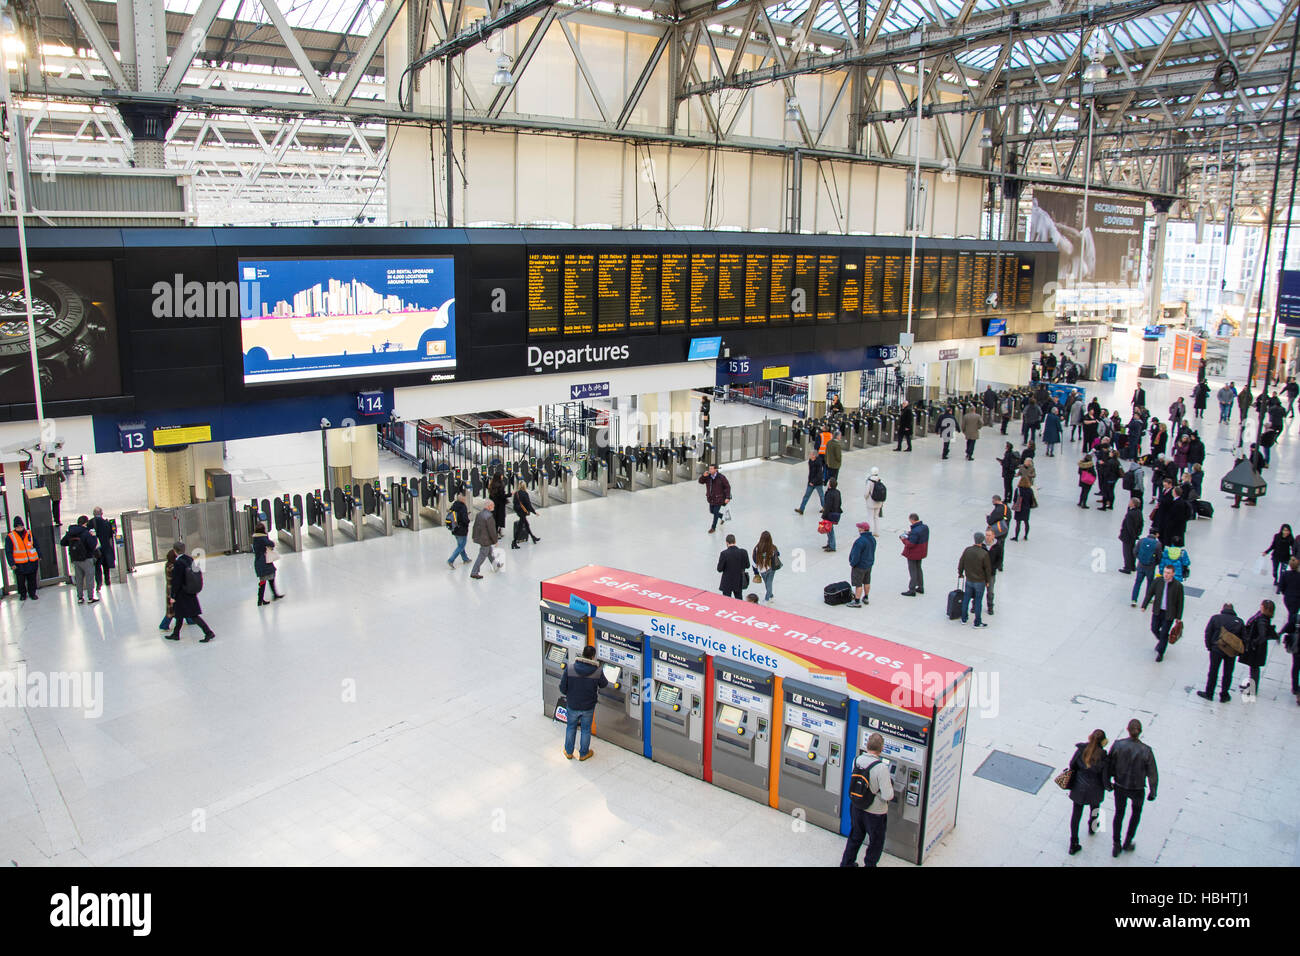 Les départs à la gare de Waterloo, Waterloo, London Borough of Lambeth, Greater London, Angleterre, Royaume-Uni Banque D'Images